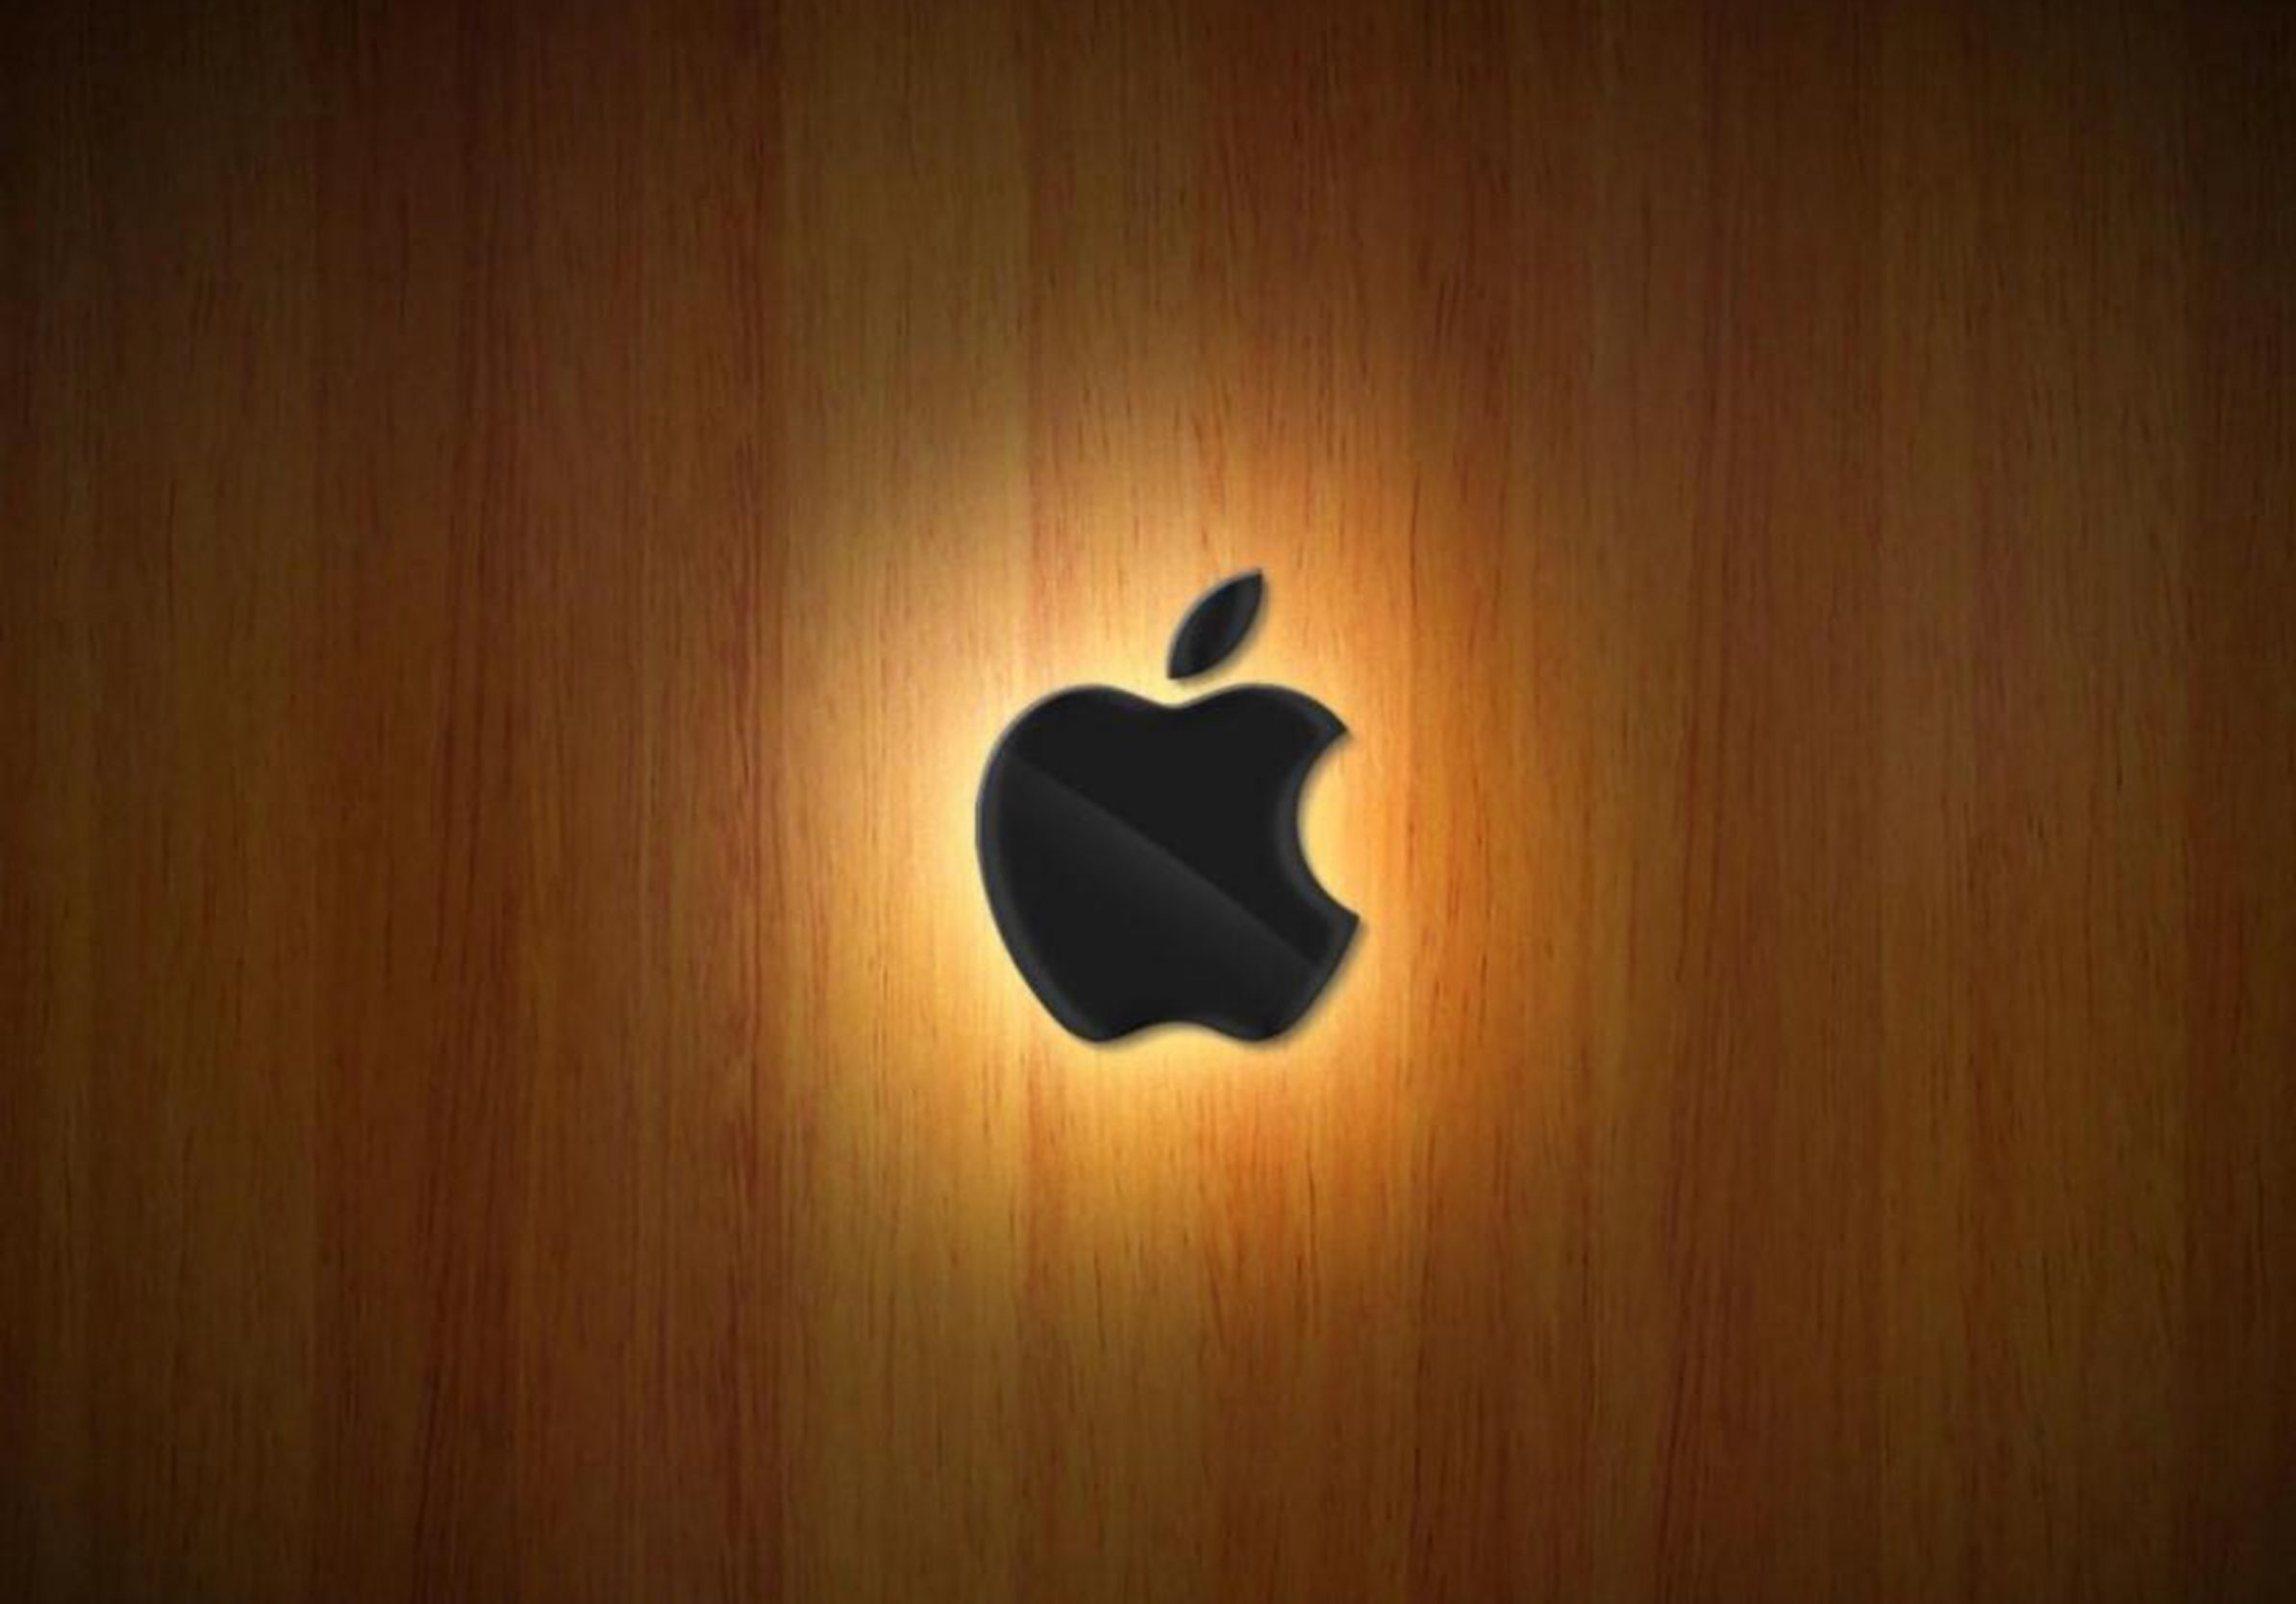 2388x1668 iPad Pro wallpapers Apple Logo Wood Ipad Wallpaper 2388x1668 pixels resolution